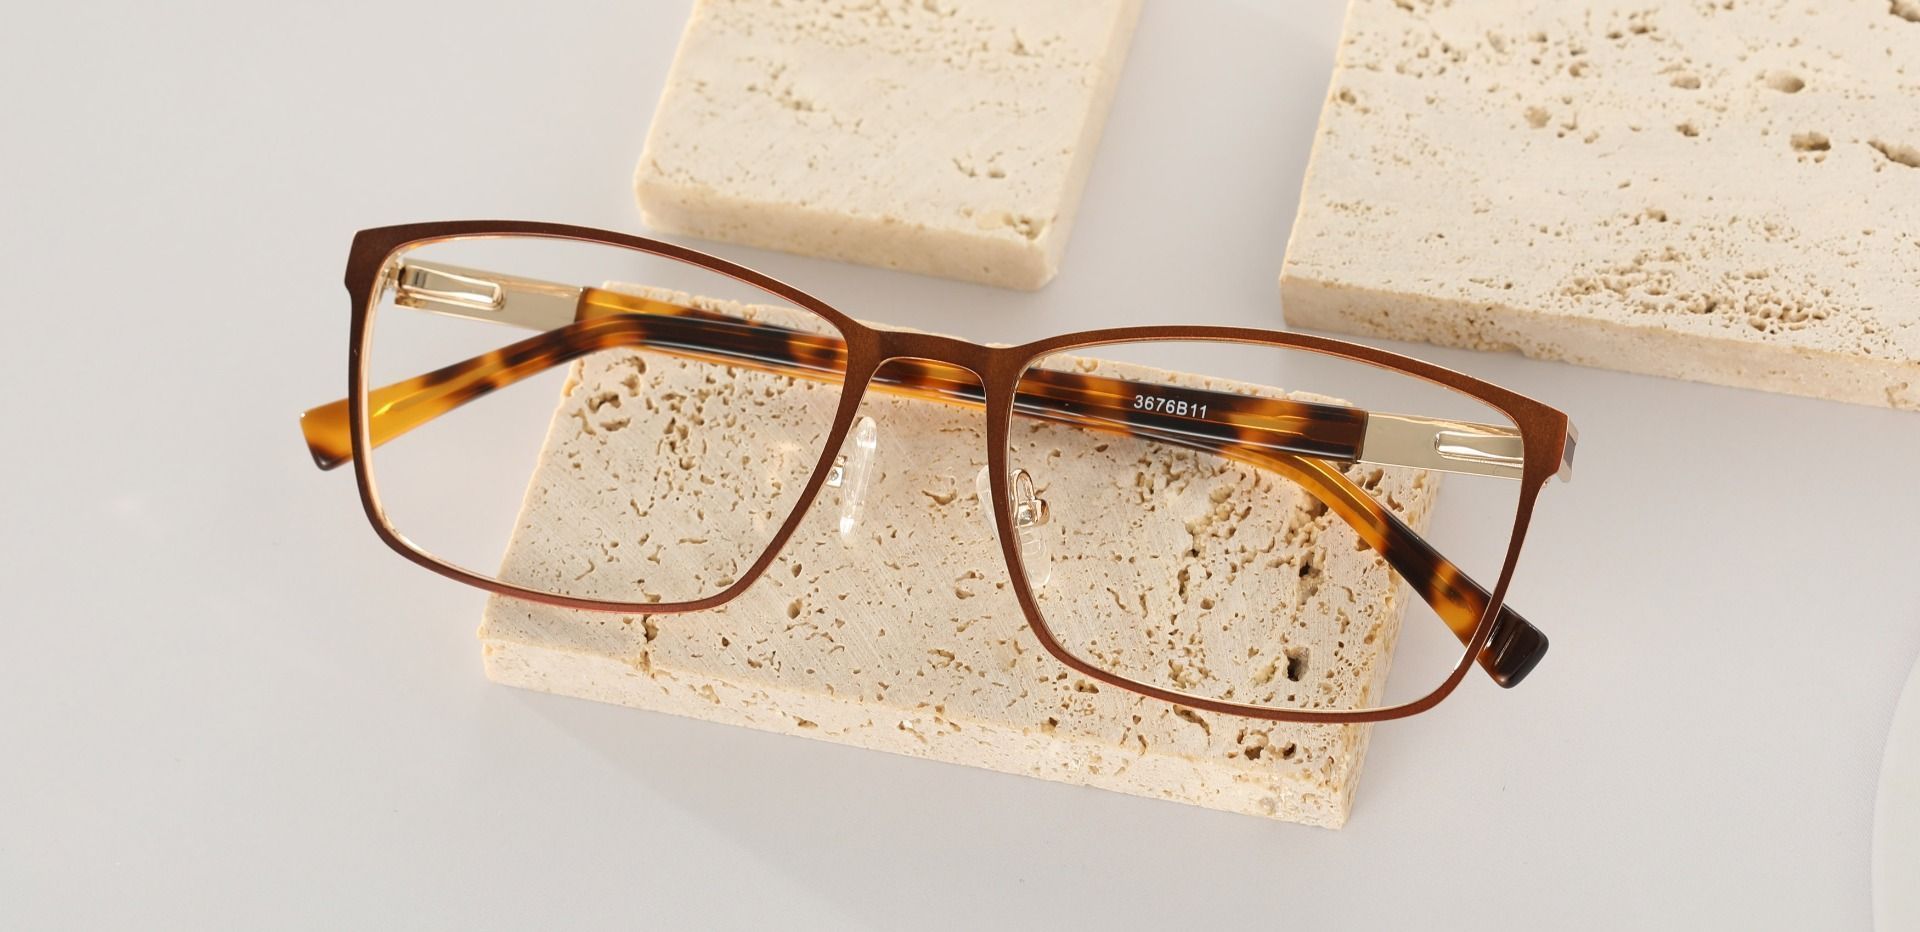 Cornell Rectangle Prescription Glasses - Brown